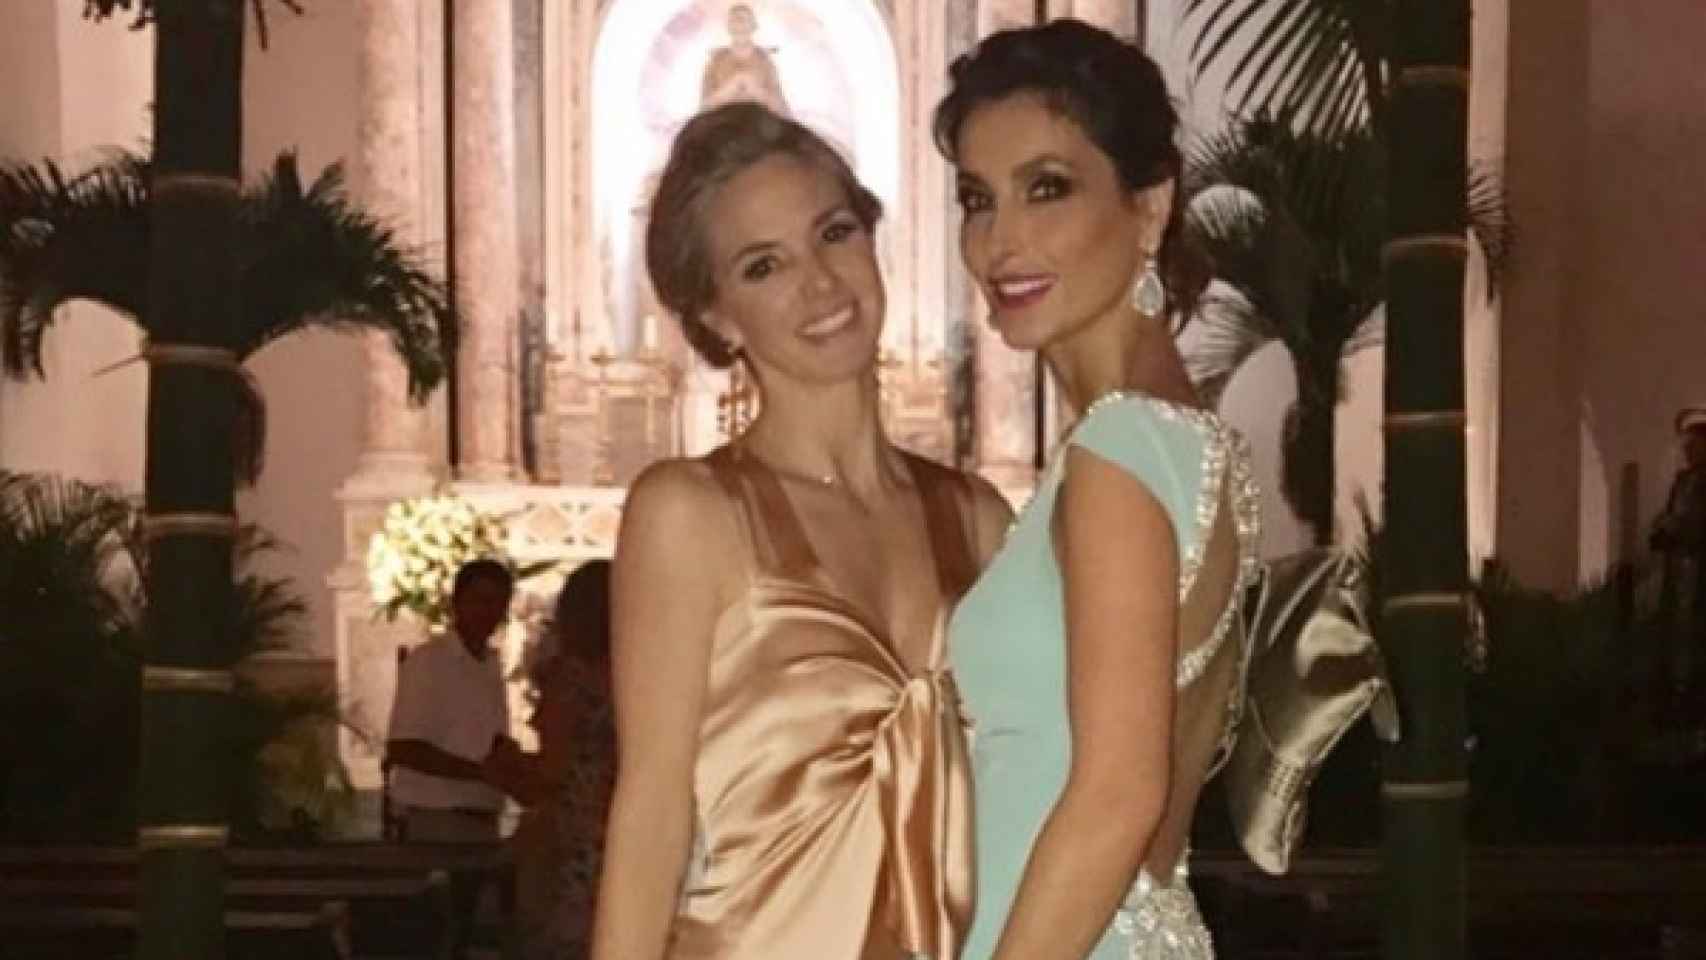 Genoveva Casanova y Paloma Cuevas, dos amigas en una boda en Colombia.